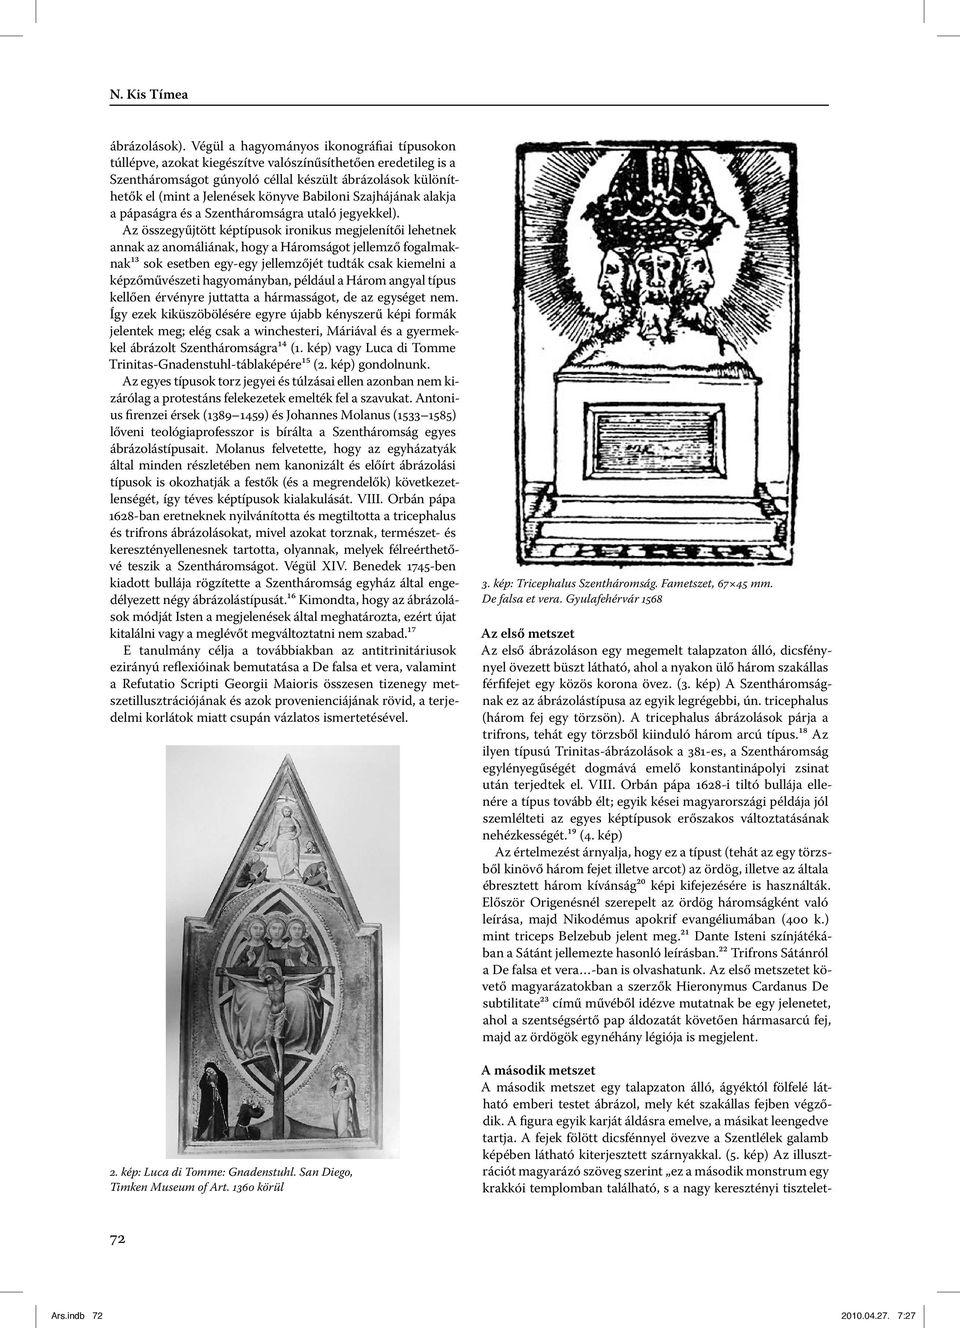 kép) Az illusztrációt magyarázó szöveg szerint ez a második monstrum egy krakkói templomban található, s a nagy keresztényi tiszteletábrázolások).